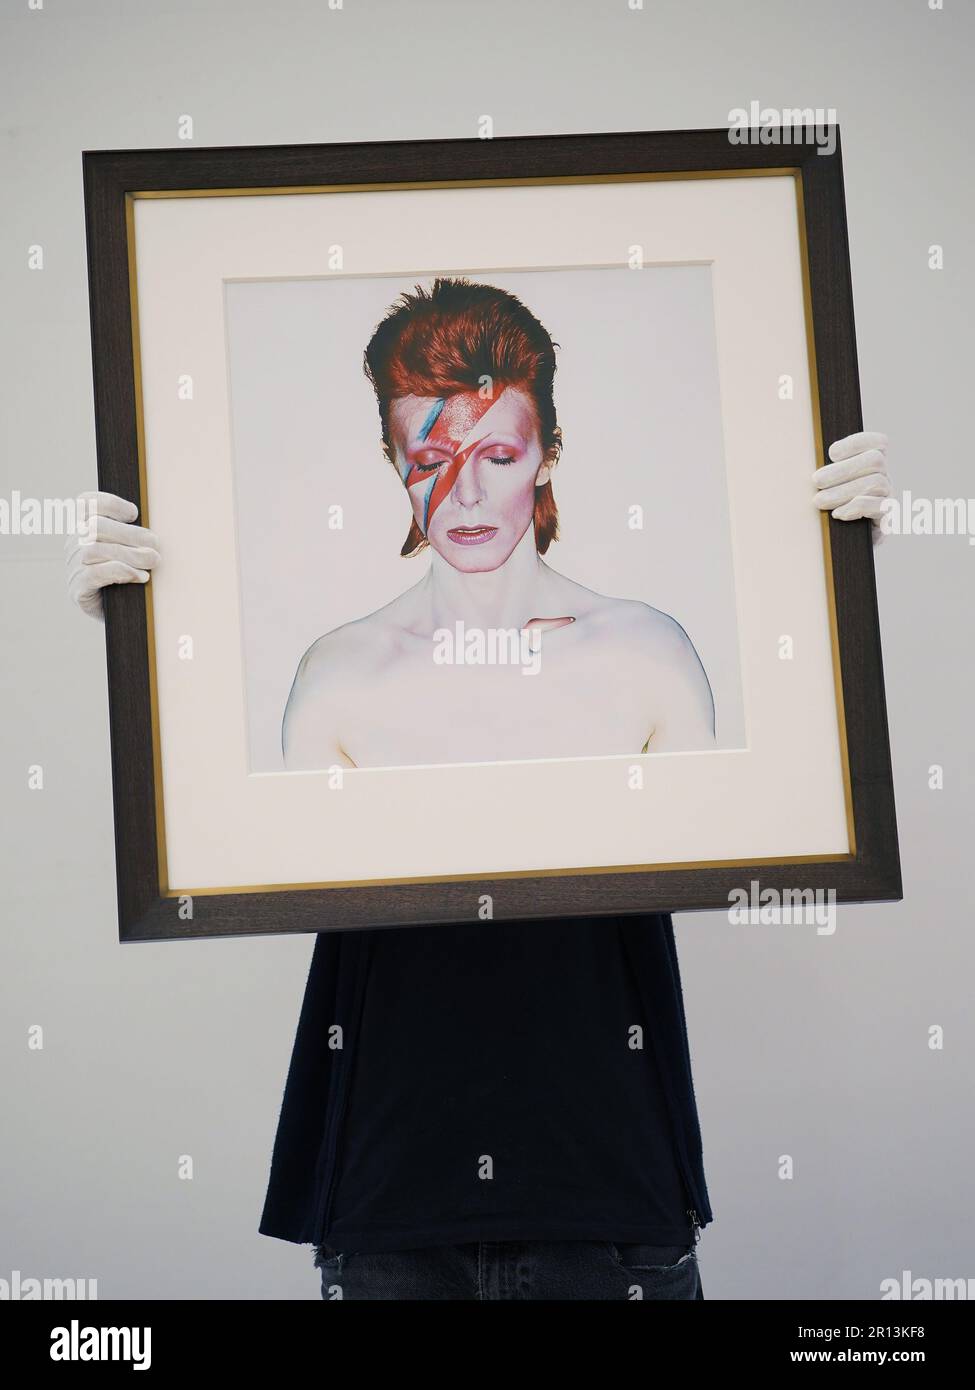 Un tecnico della galleria che tiene una fotografia di Brian Duffy, David Bowie, 1973, con una stima di £7.000-9.000, in esposizione a Phillips, Londra, durante una telefonata fotografica per una collezione privata di opere di fotografi del 20th e del 21st secolo, prima che siano offerte per la vendita dalla casa d'asta. Data immagine: Giovedì 11 maggio 2023. Foto Stock